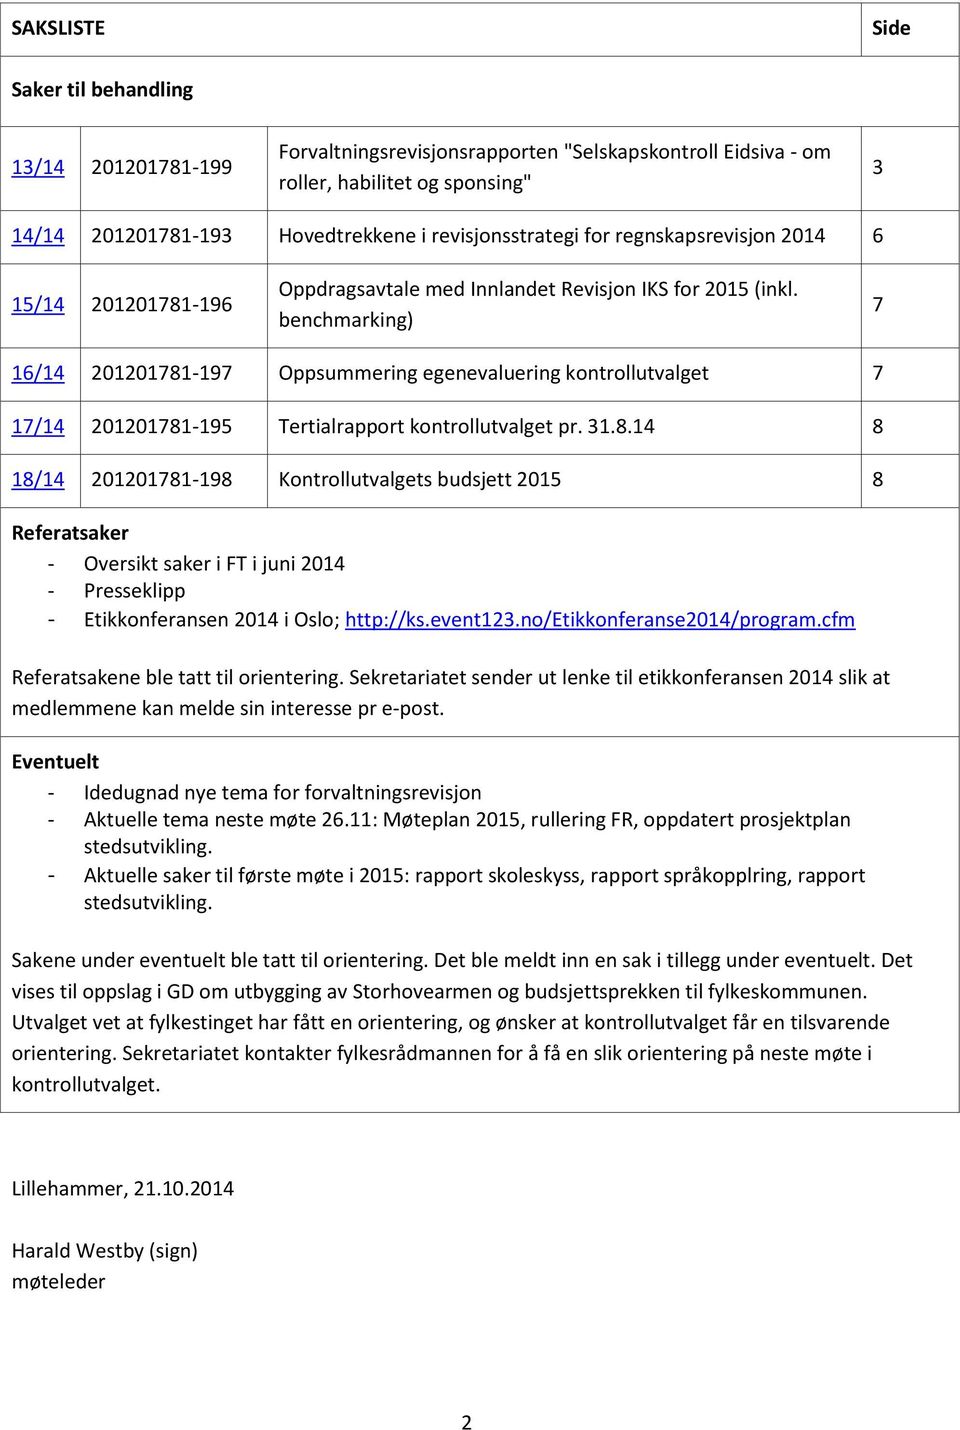 benchmarking) 7 16/14 201201781-197 Oppsummering egenevaluering kontrollutvalget 7 17/14 201201781-195 Tertialrapport kontrollutvalget pr. 31.8.14 8 18/14 201201781-198 Kontrollutvalgets budsjett 2015 8 Referatsaker - Oversikt saker i FT i juni 2014 - Presseklipp - Etikkonferansen 2014 i Oslo; http://ks.